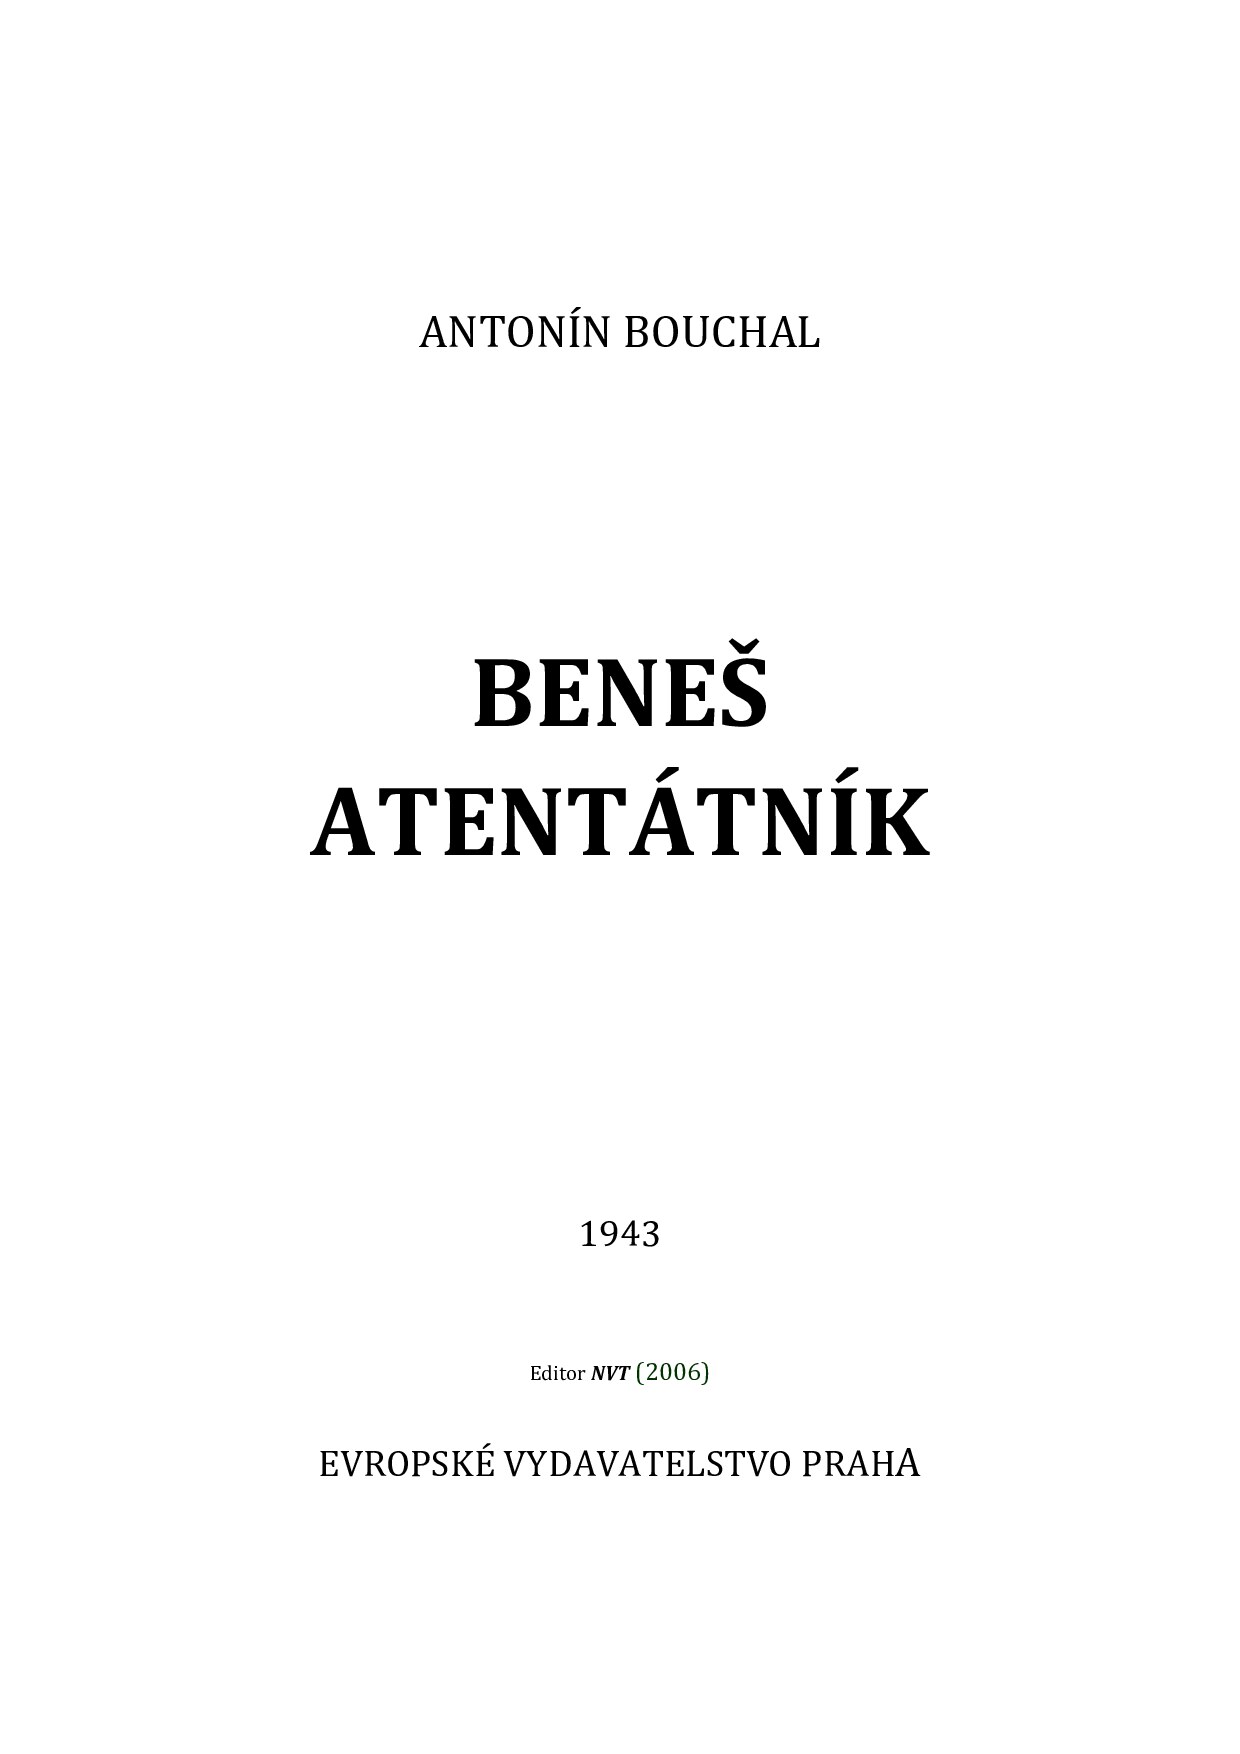 Benes_atentatnik-Antonin_Bouchal